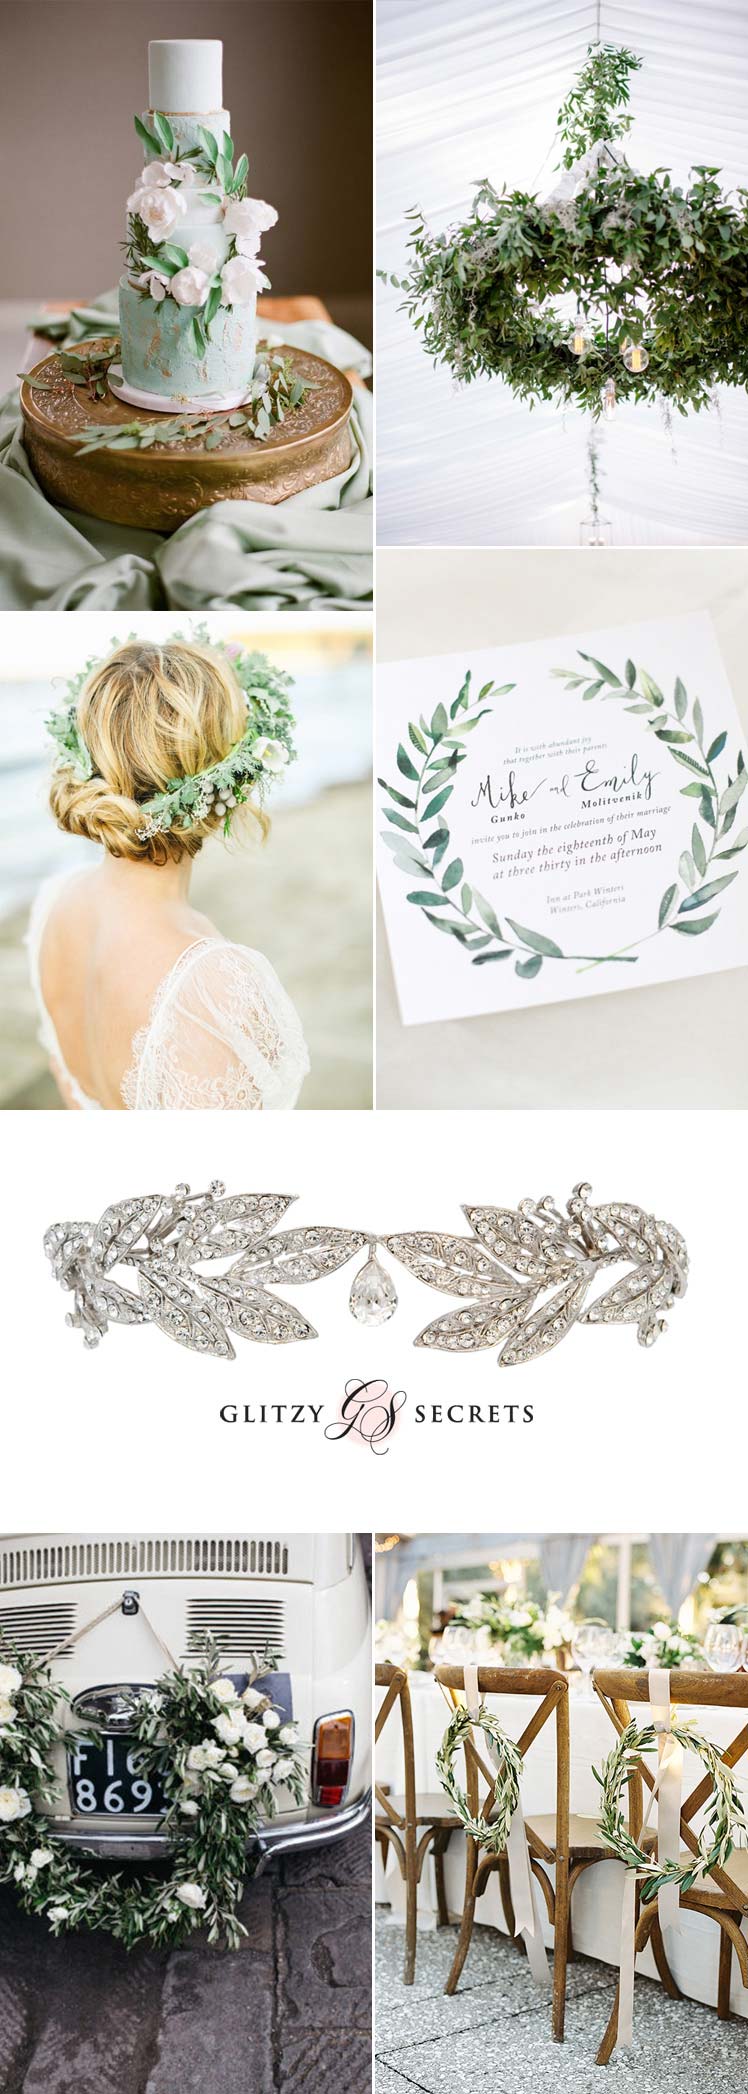 Laurel Leaf wedding theme inspiration ideas